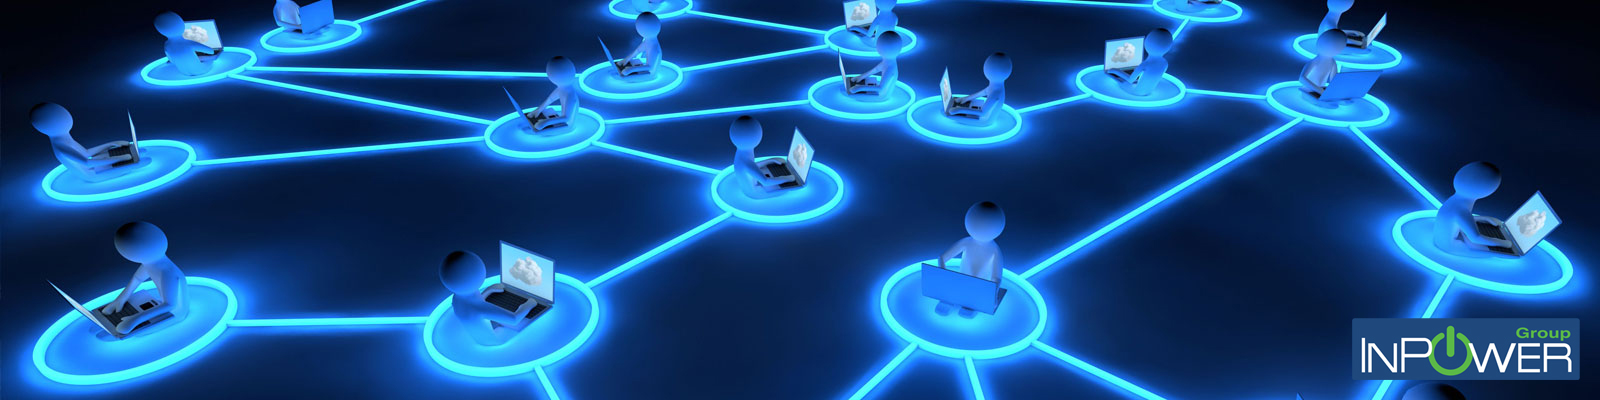 Progettazione infrastrutture ICT INPOWER-GROUP Networking reti wireless e telefonia IP  soddisfazione Piattaforme partner networking enti 